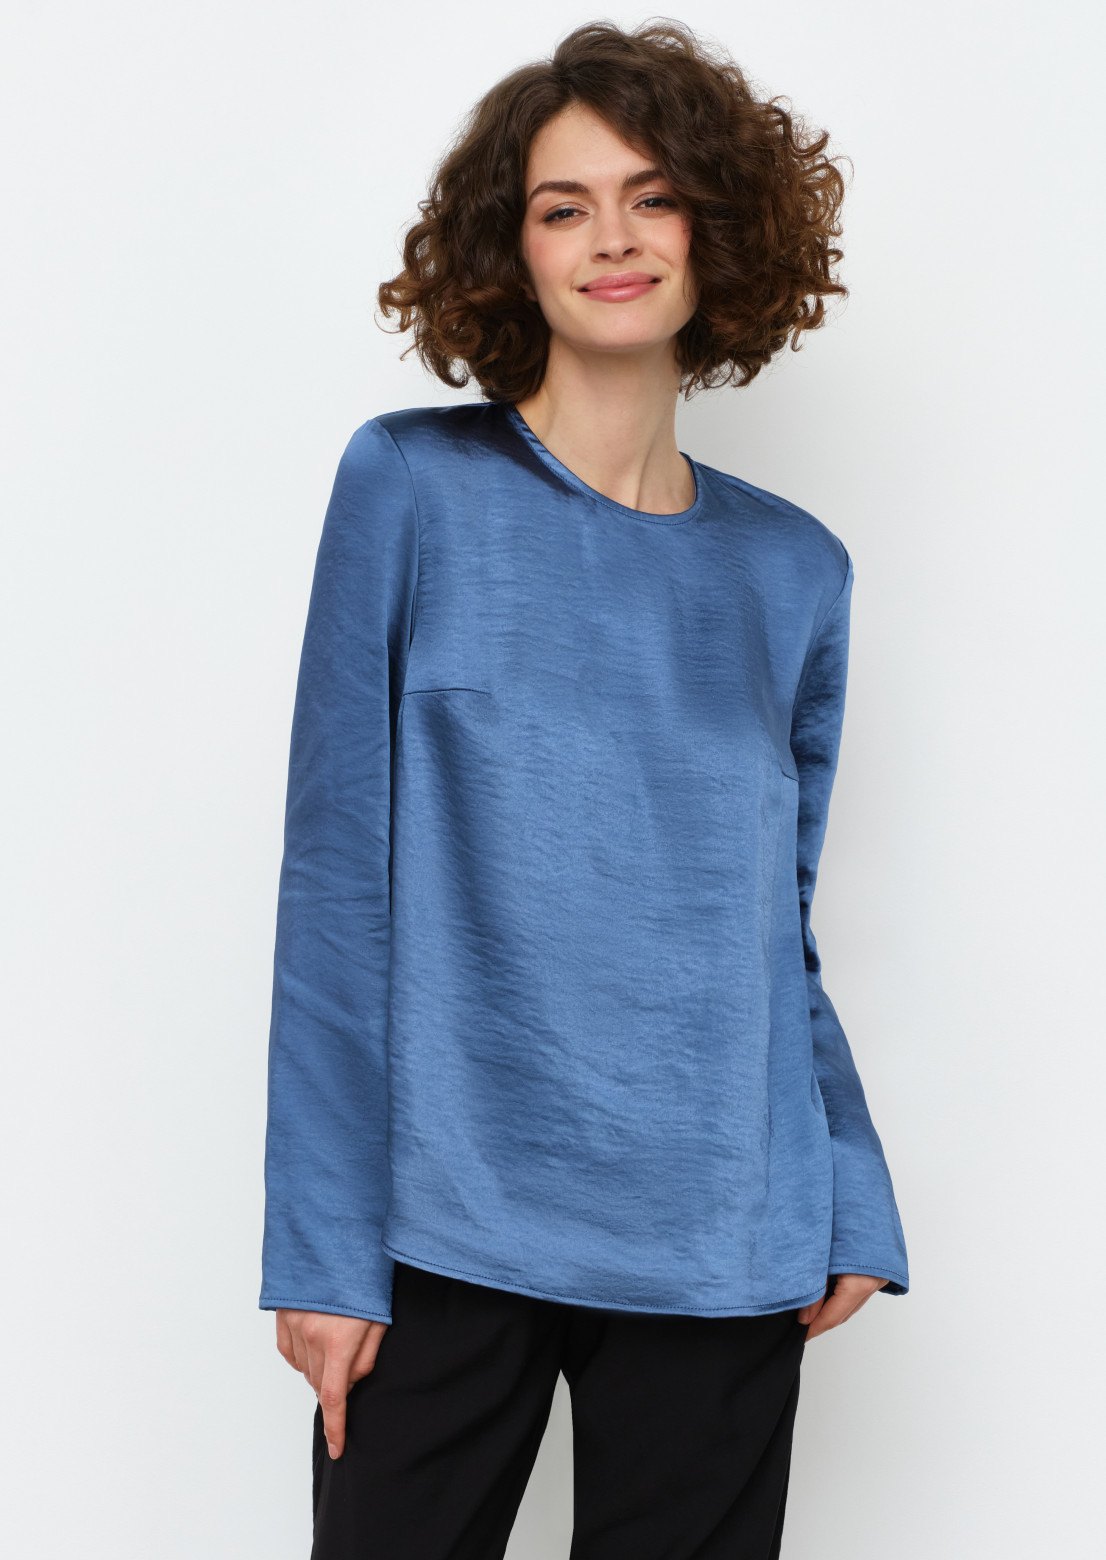 Blue colour satin blouse